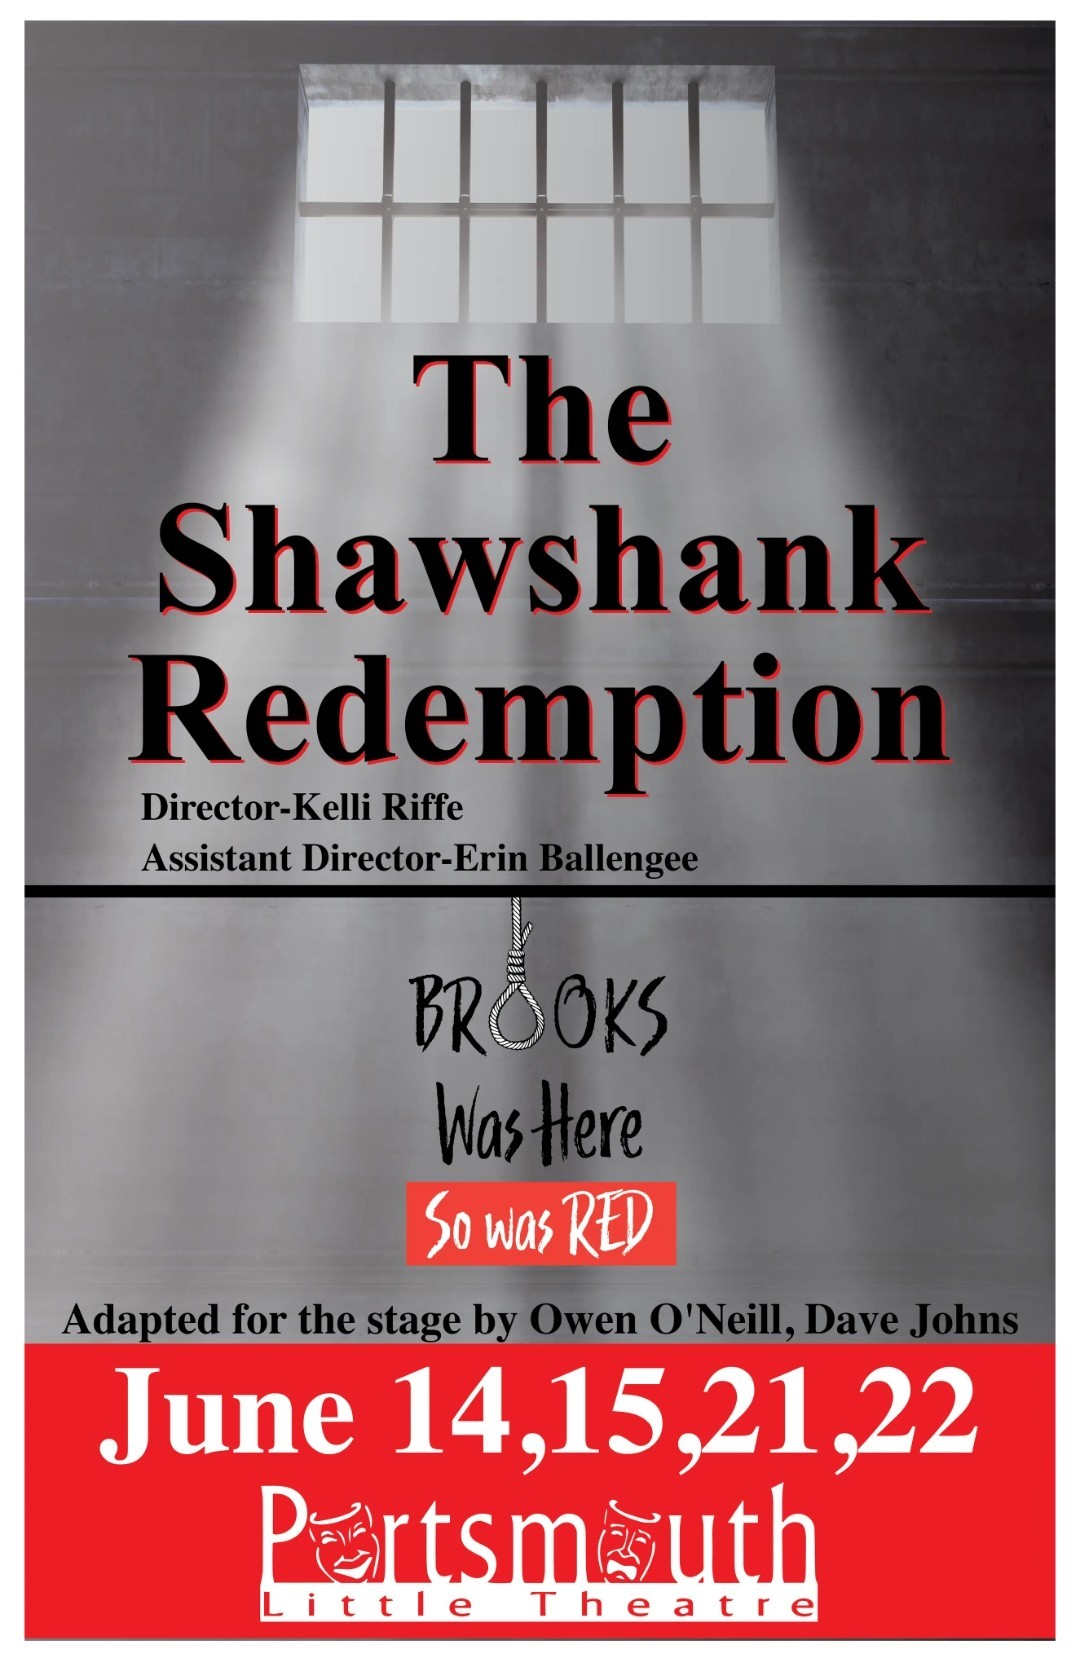 Shawshank Redemption  on juin 21, 19:30@Portsmouth Little Theatre - Choisissez un siège,Achetez des billets et obtenez des informations surPortsmouth Little Theatre 